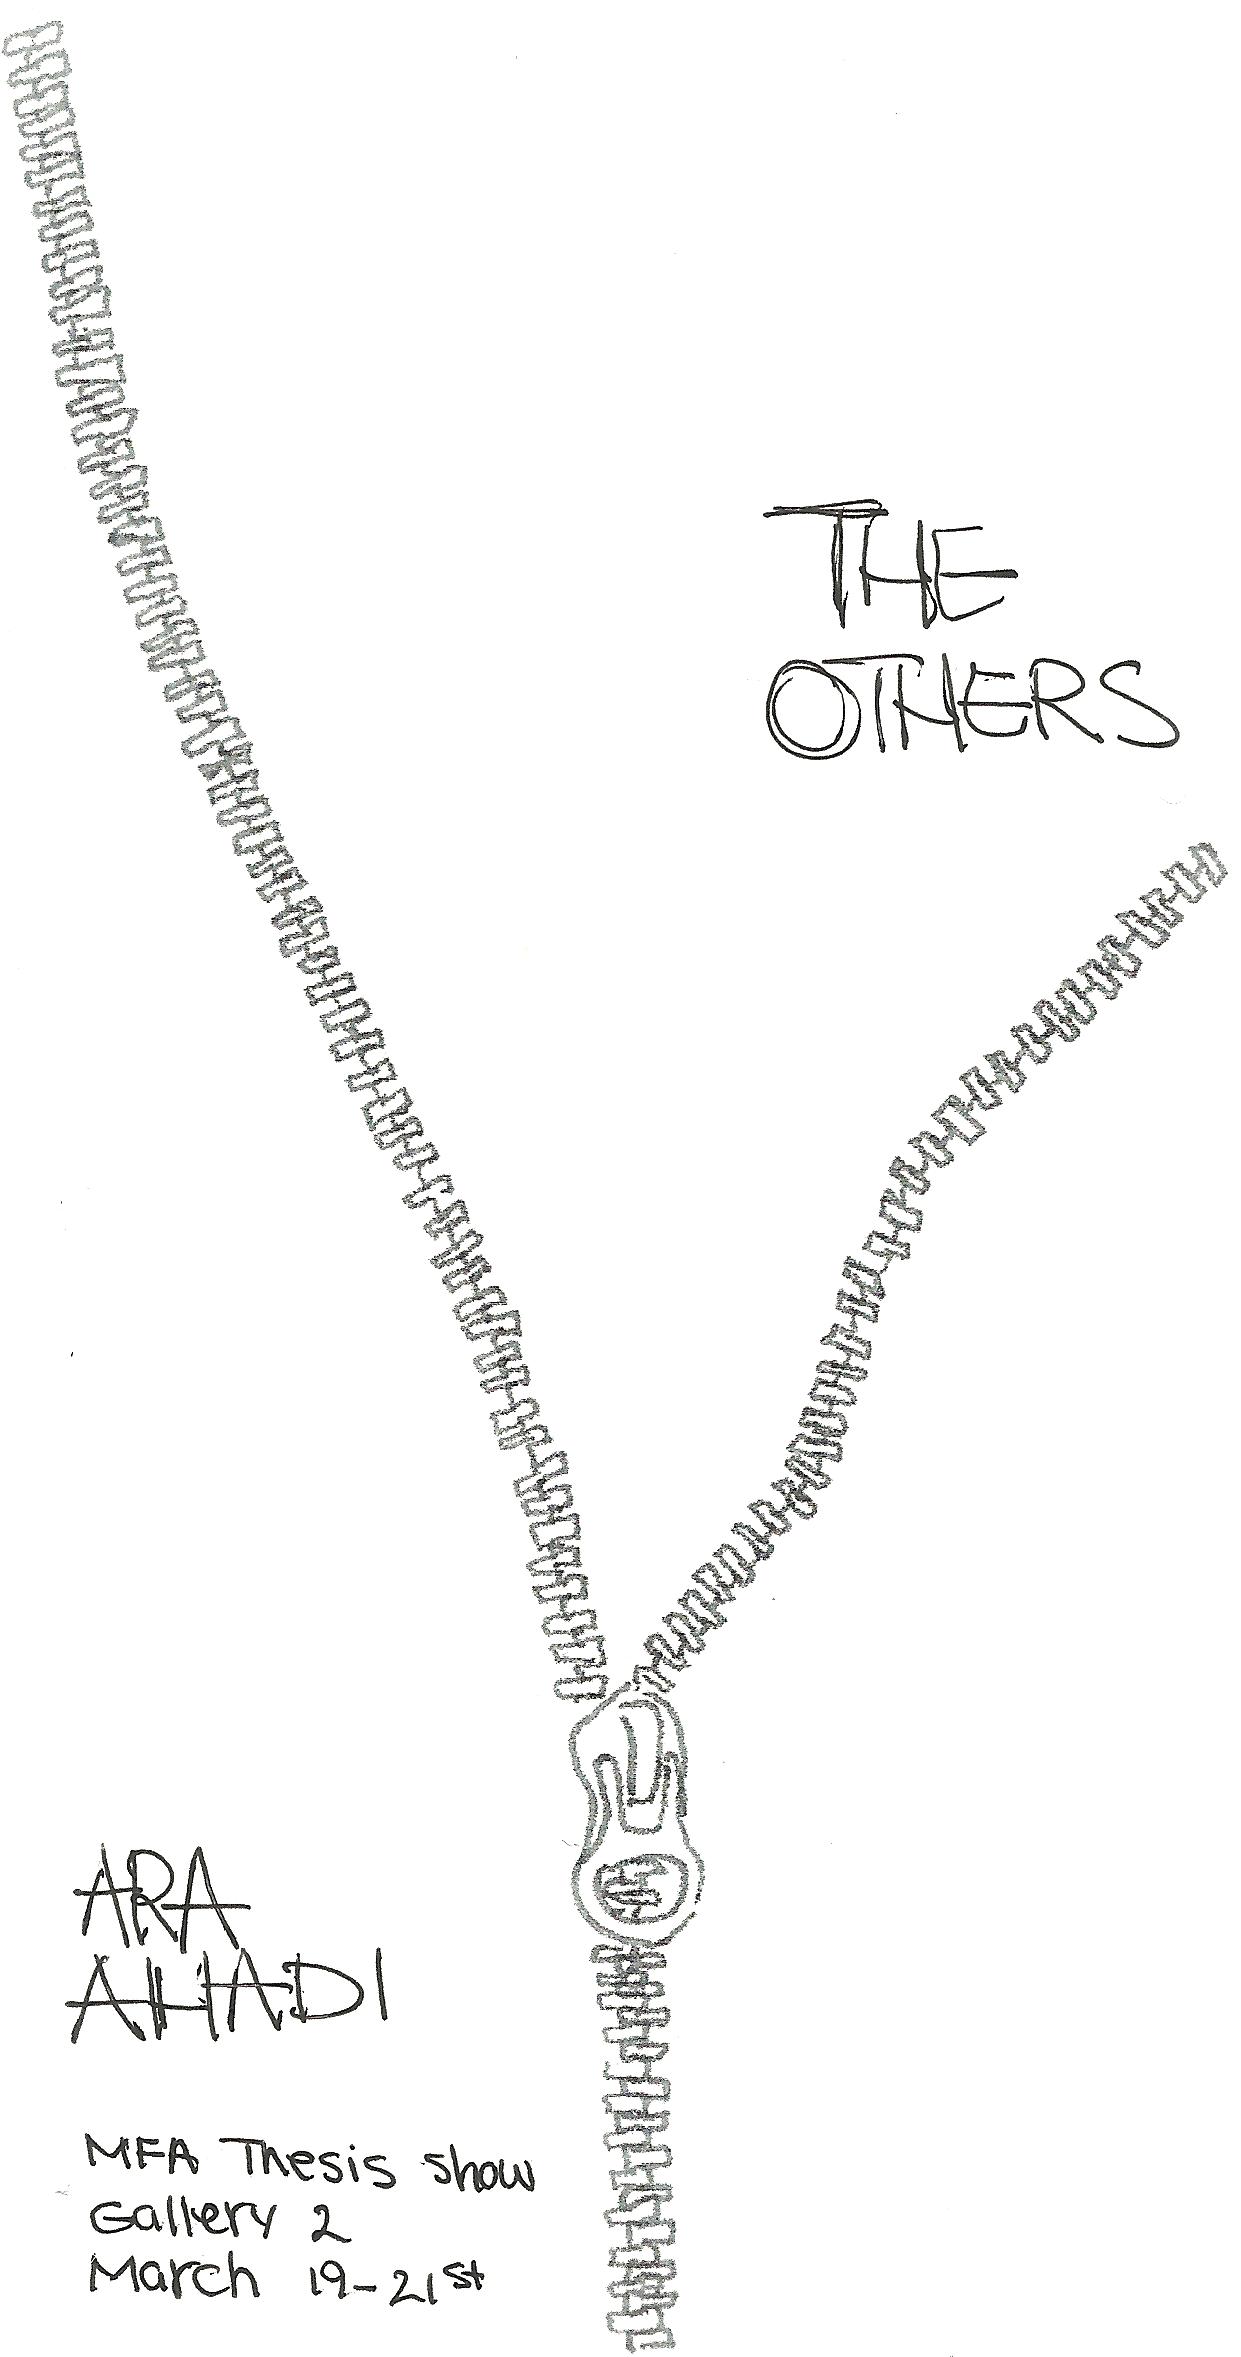 Ara Ahadi - "The Others" - MFA Thesis Show